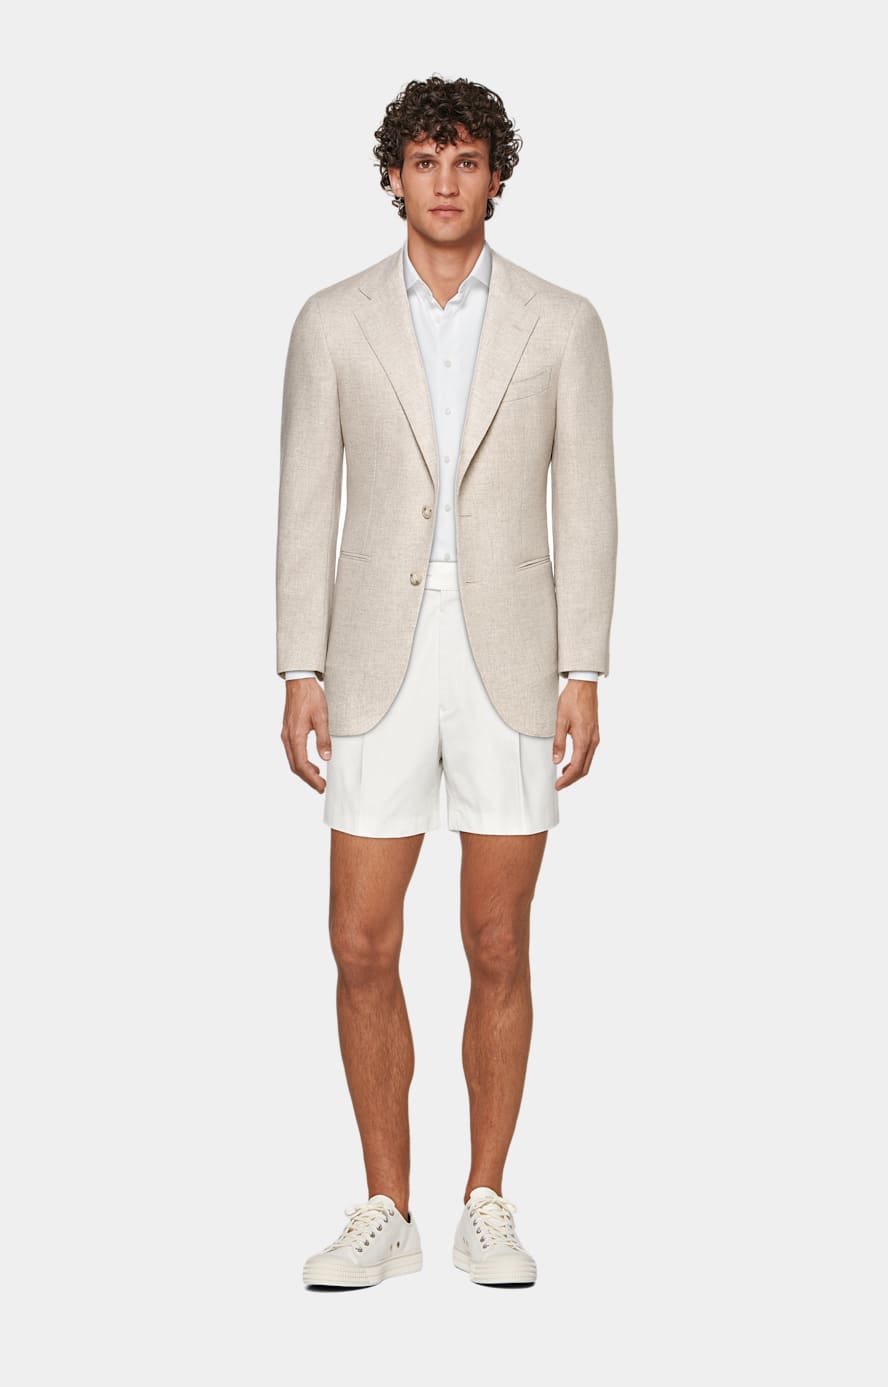 Camicia Royal Oxford bianca vestibilità slim